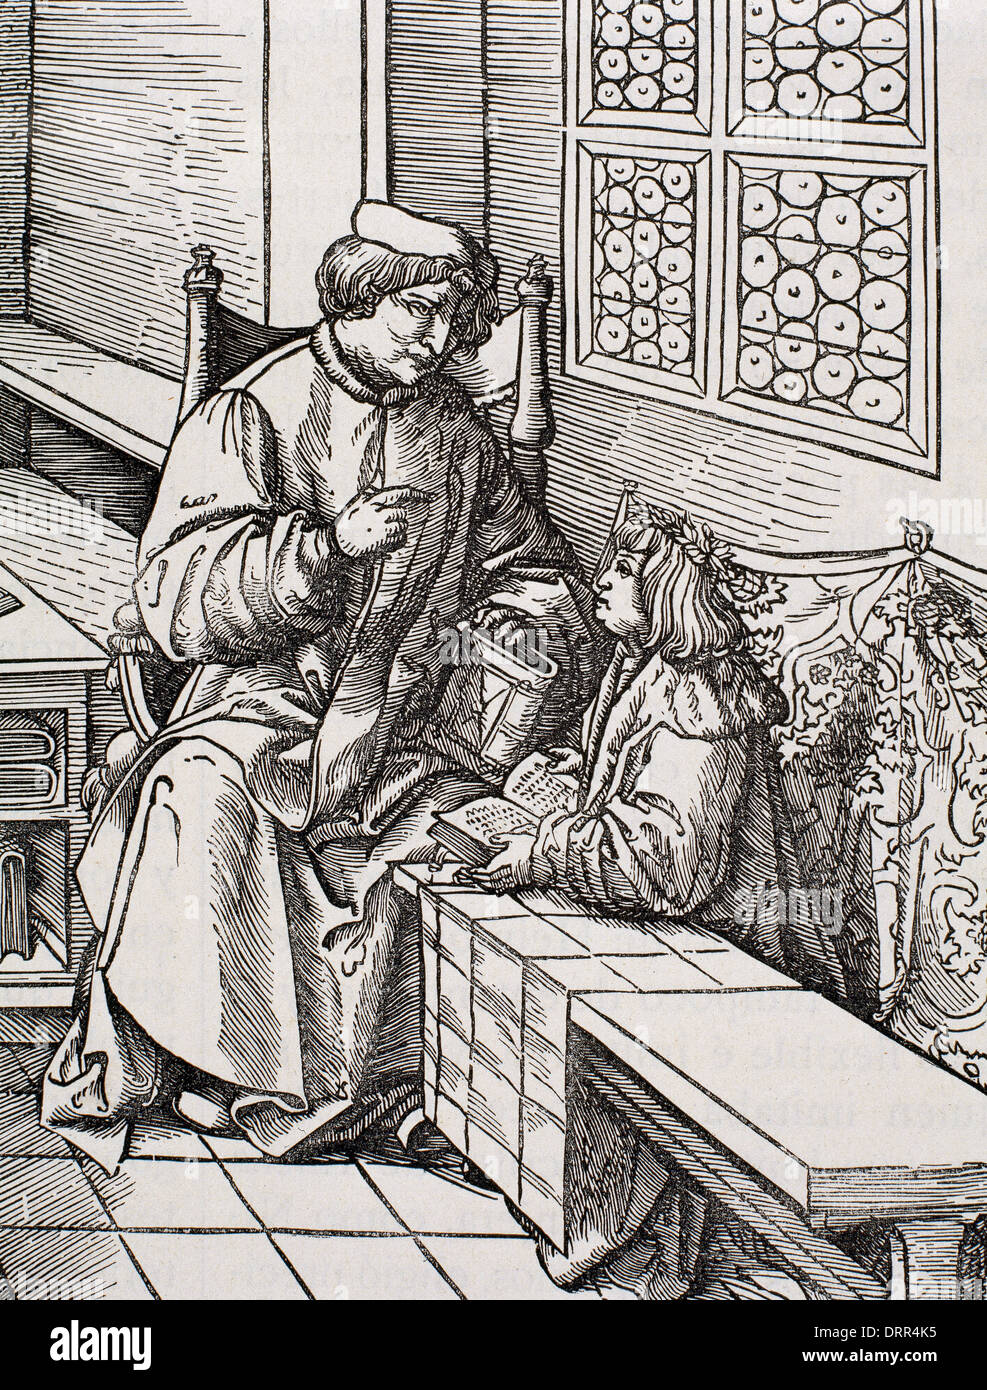 Maximilian I (1459-1519). Holy Roman Emperor (1443-1519). Maximilian child in class. Engraving. Stock Photo